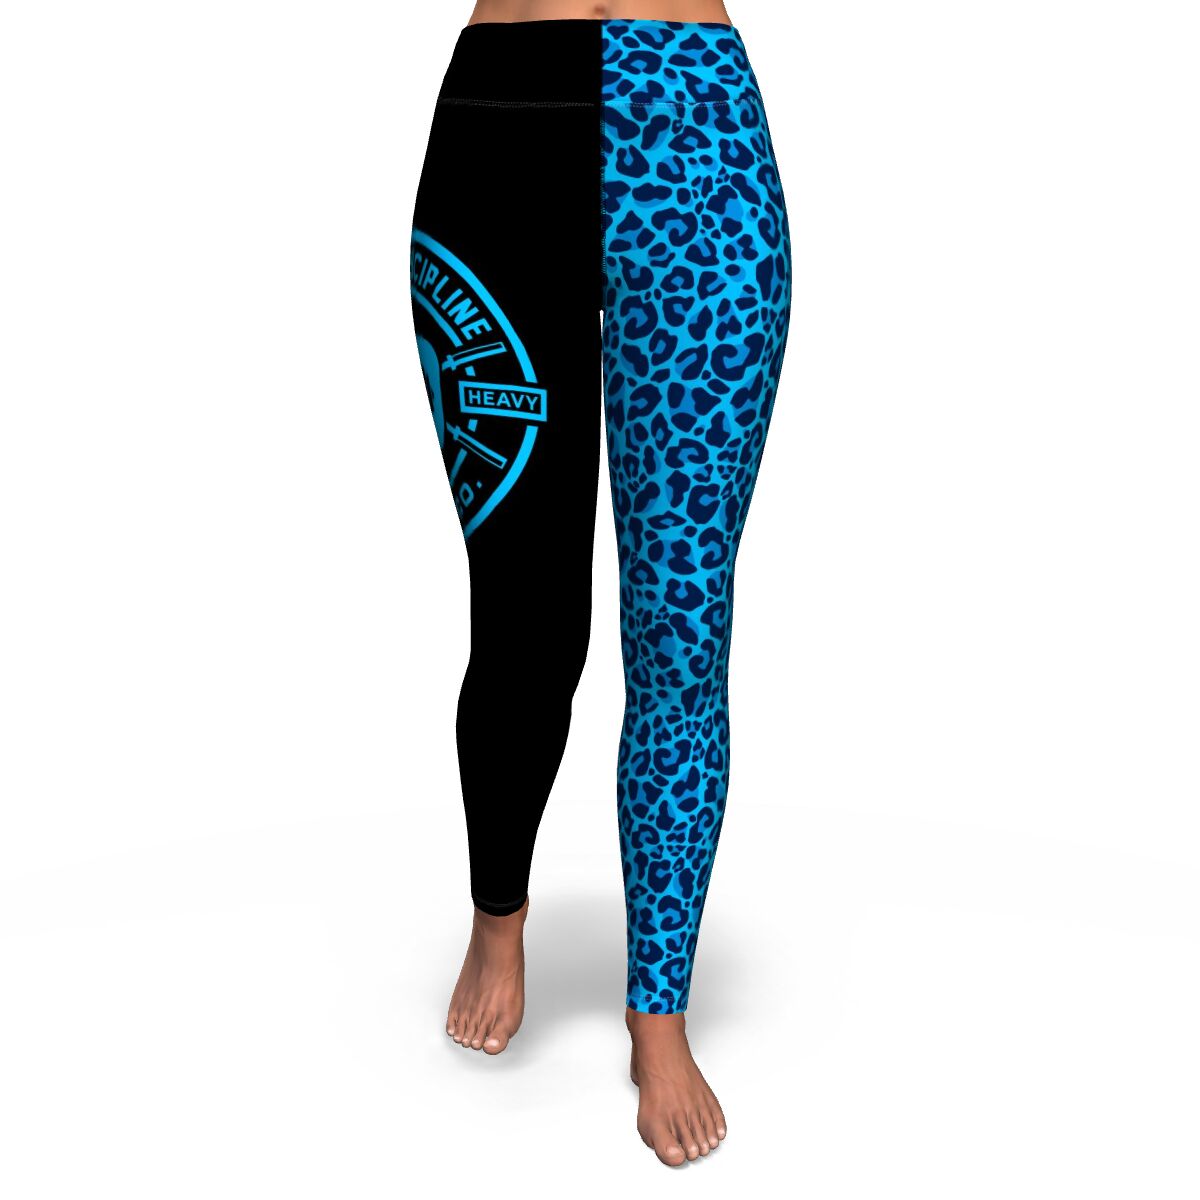 Super Soft Yoga Leggings - Blue Snow Leopard Print, Women's Leggings